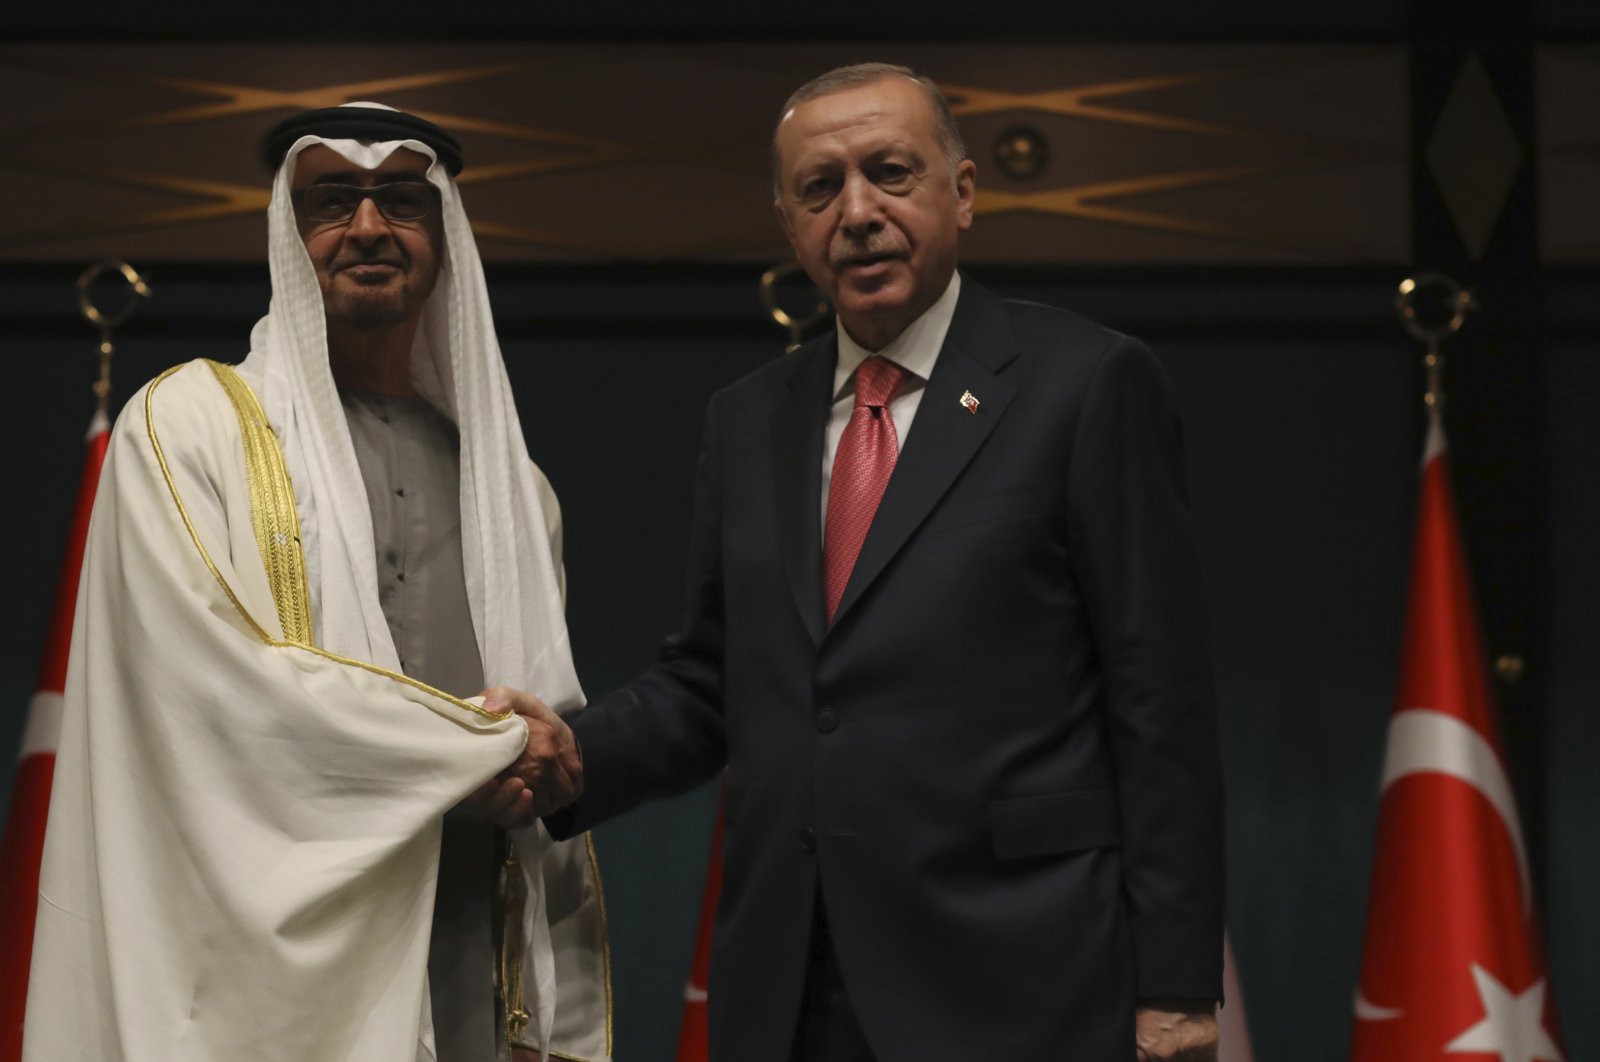 فوز أردوغان في التصويت التركي سيعزز العلاقات مع الدول العربية